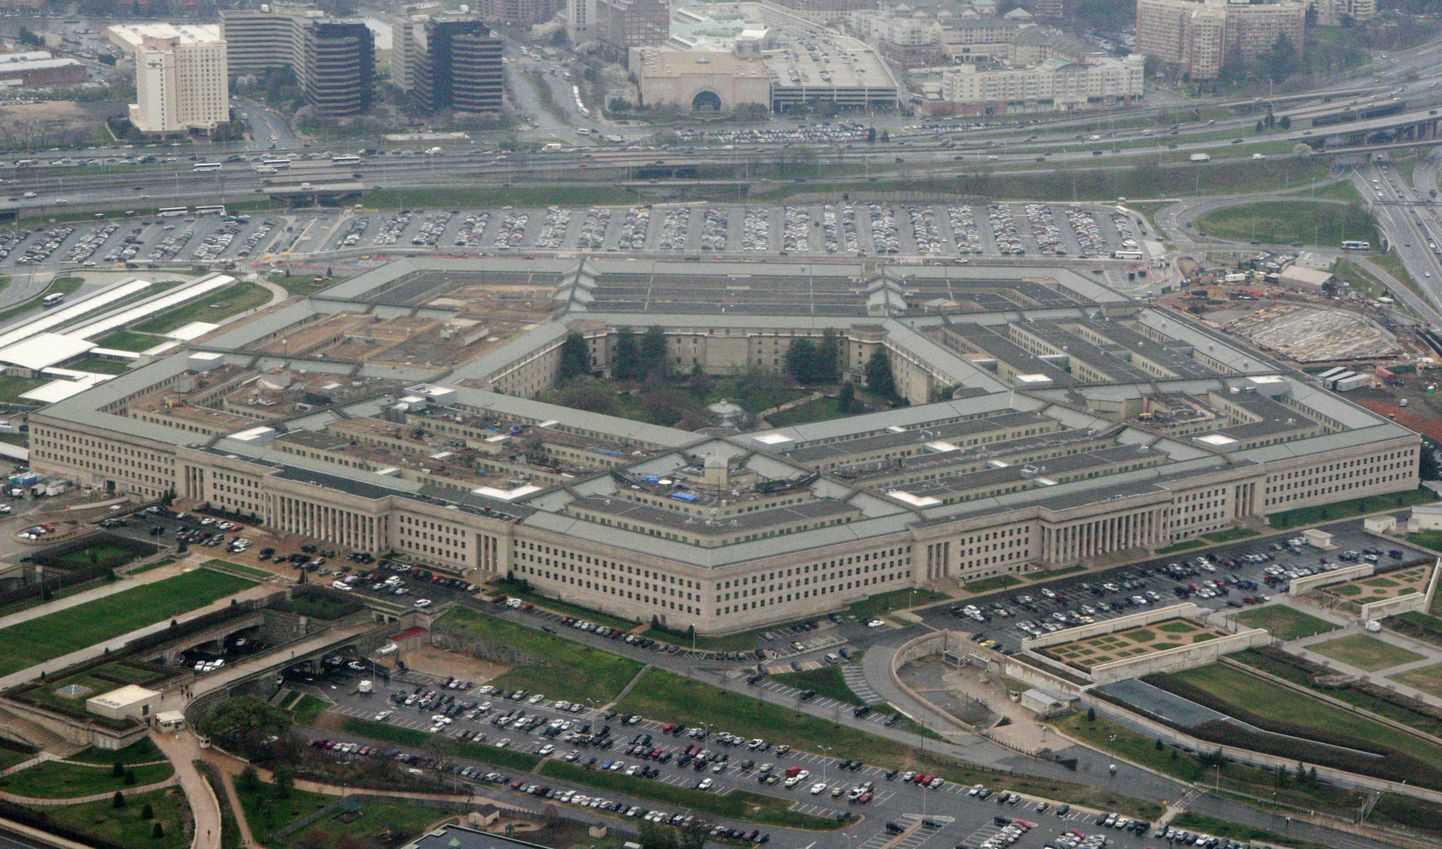 USA kaitseministeerium (Pentagon), mille kodulehekülge kräkker ründas.